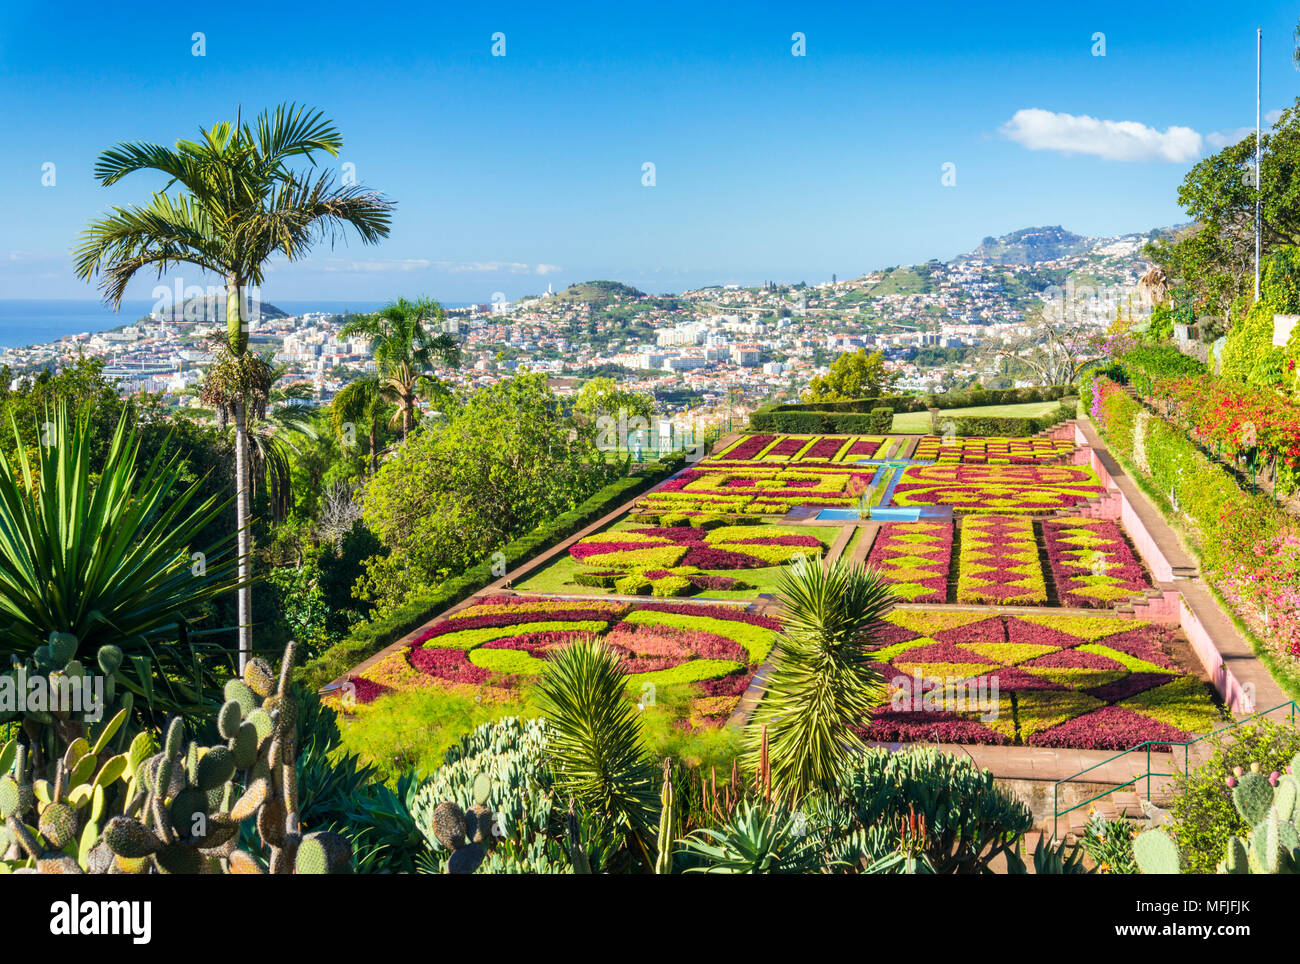 Jardín formal en Madeira (Jardín Botánico Jardim Botanico), encima de la capital de Funchal, Madeira, Portugal, el Atlántico, Europa Foto de stock